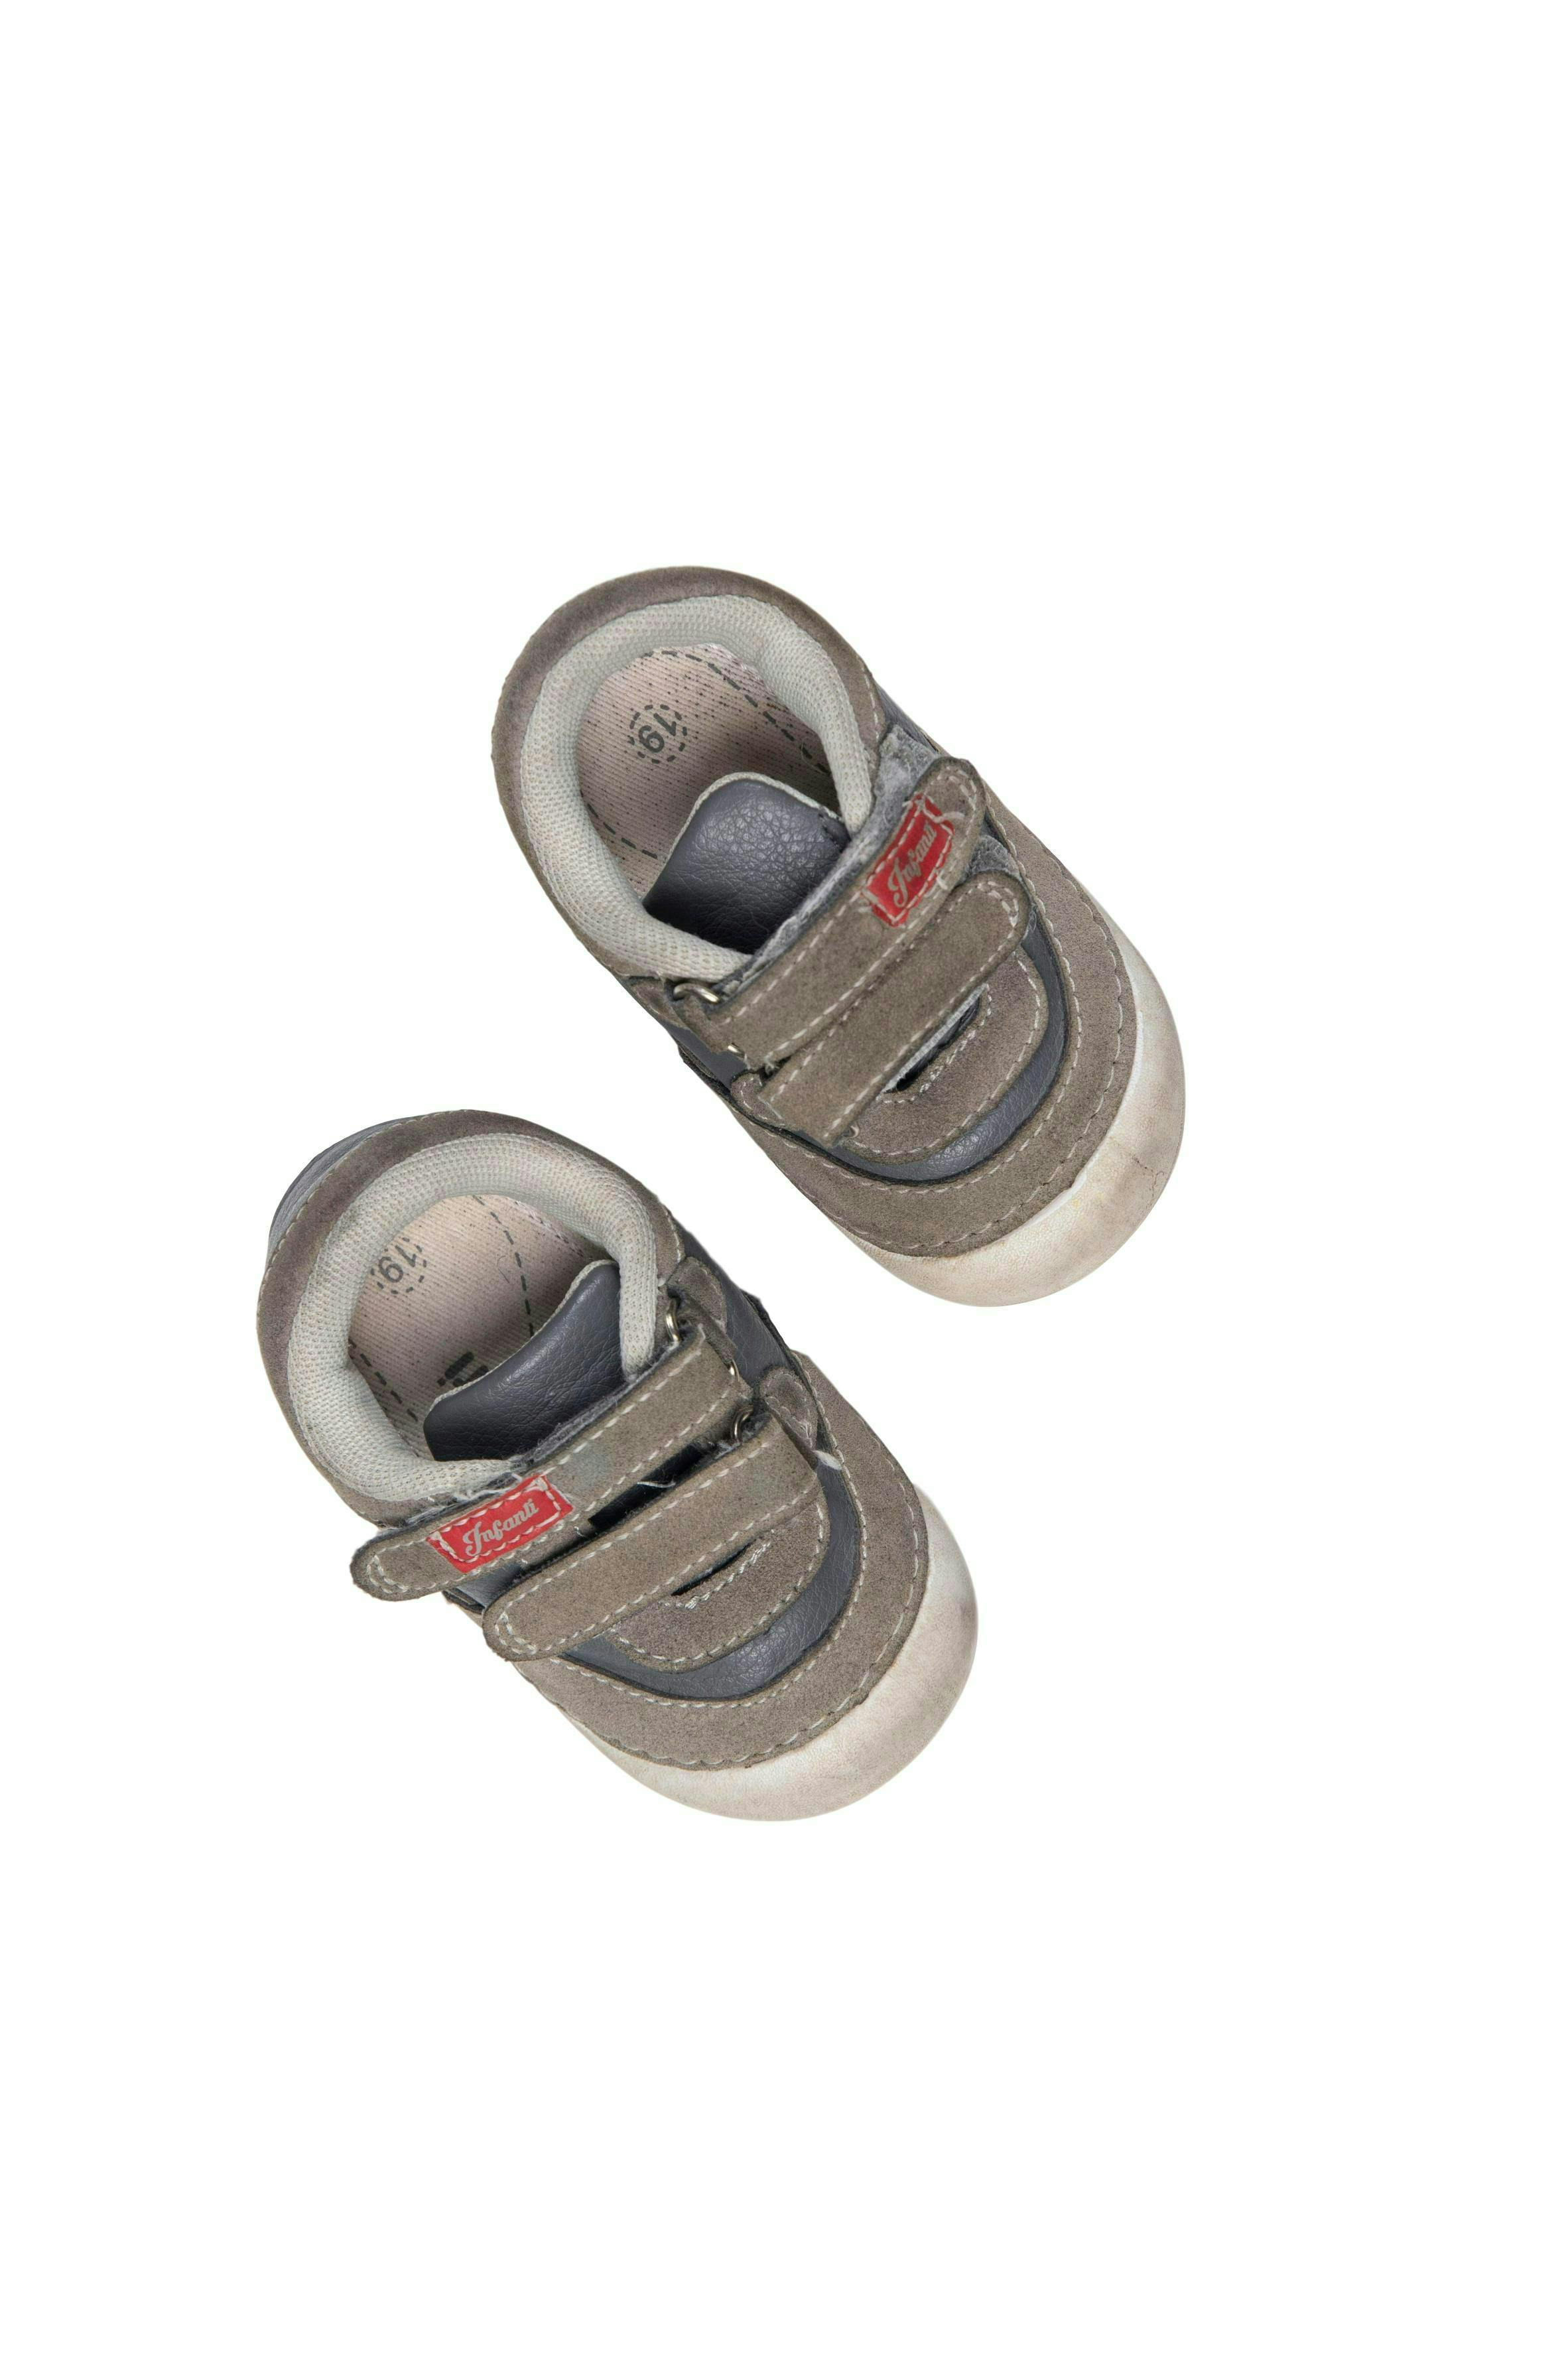 Zapatillas grises con velcro, simil cuero USA 3.5 - Infanti